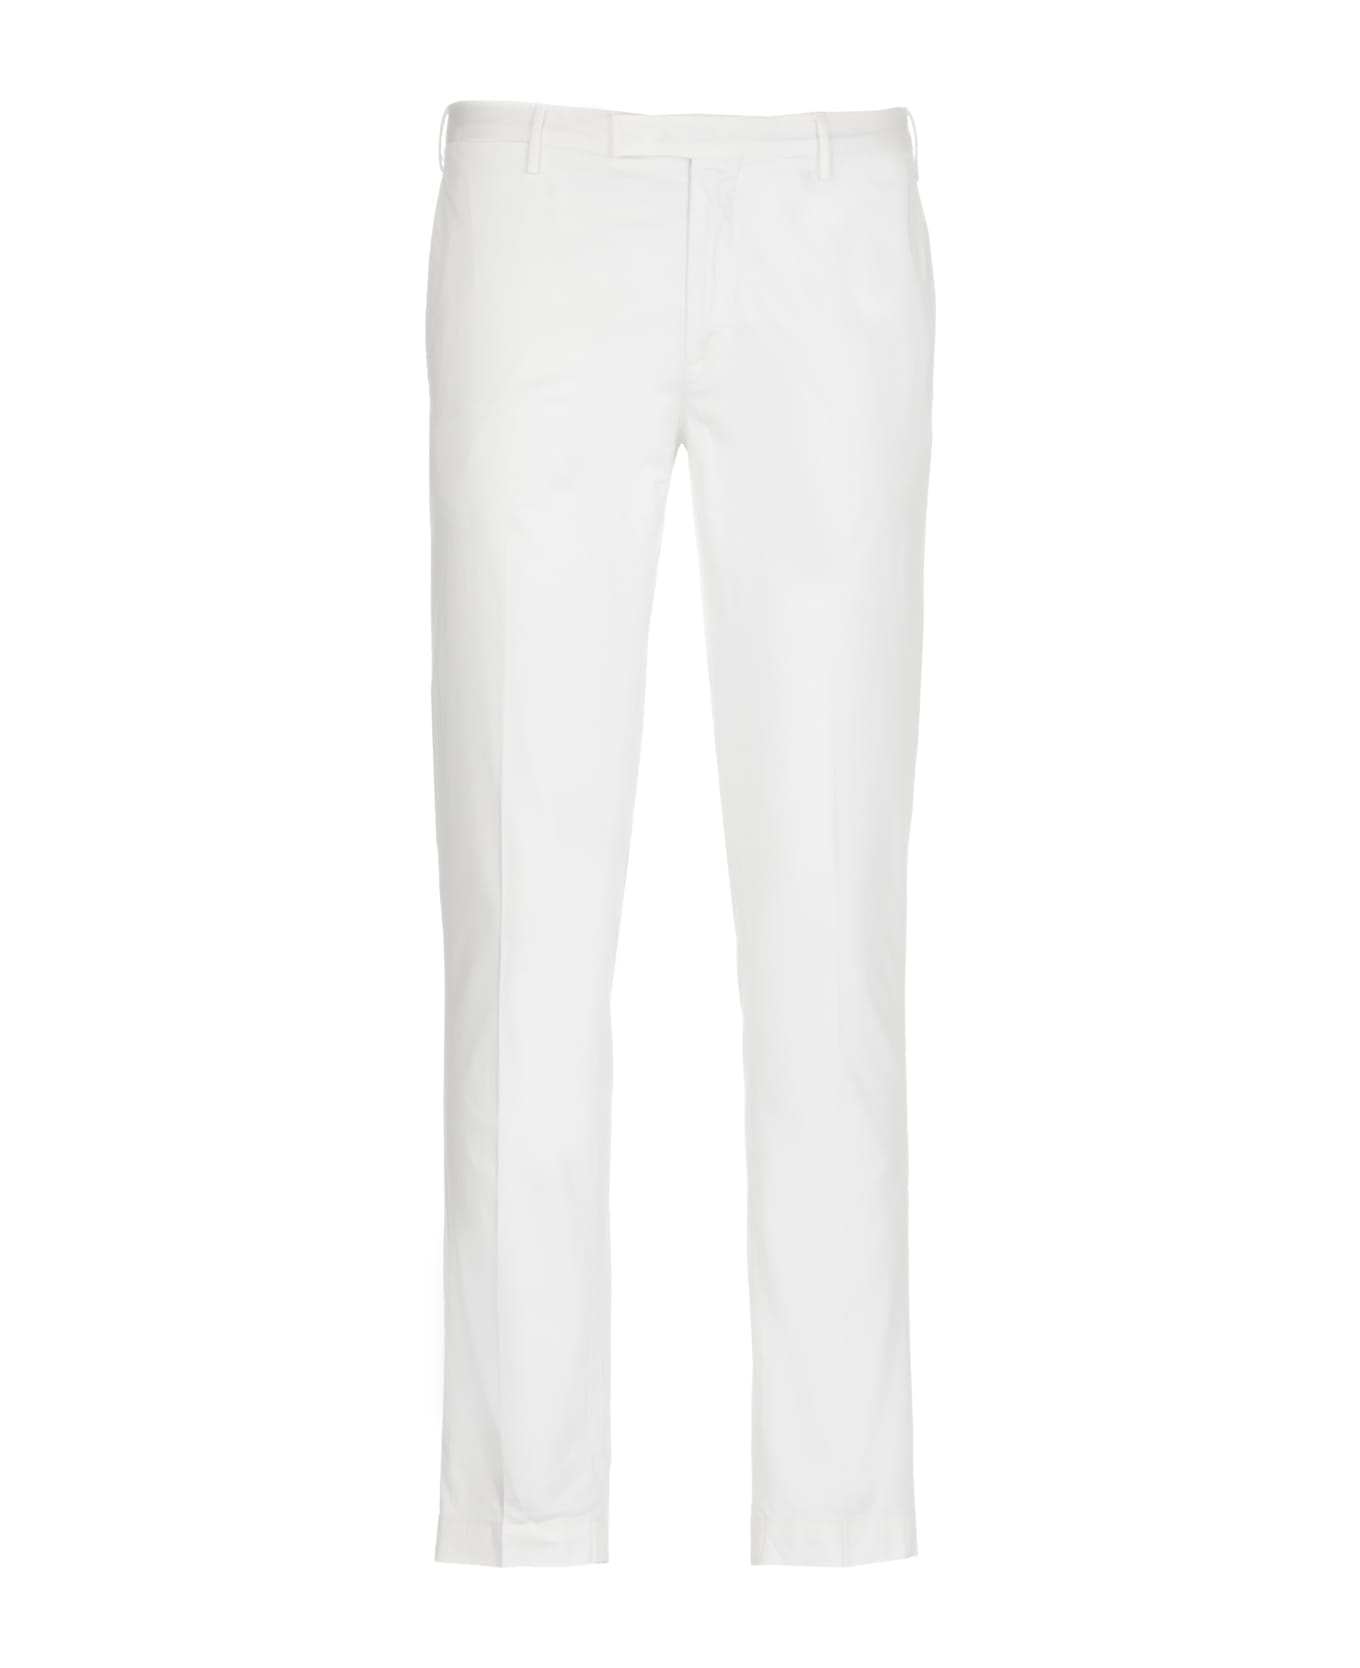 PT Torino Cotton Trousers - White